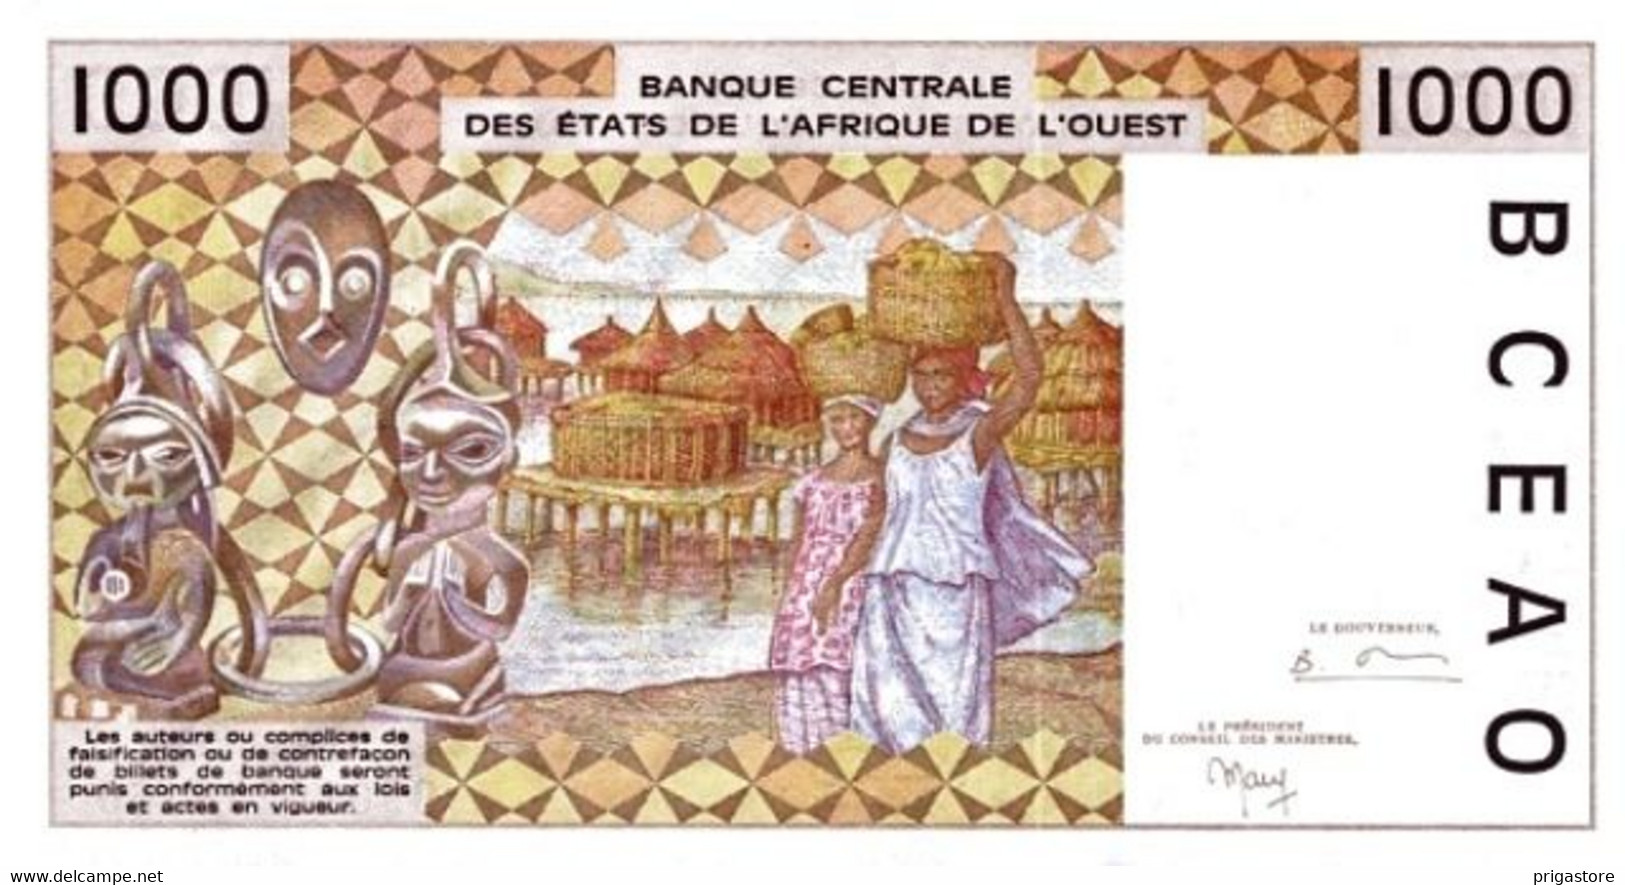 Etats D'Afrique De L'ouest Côte D'Ivoire 1999 Billet 1000 Francs Pick 111 I Neuf UNC - Côte D'Ivoire